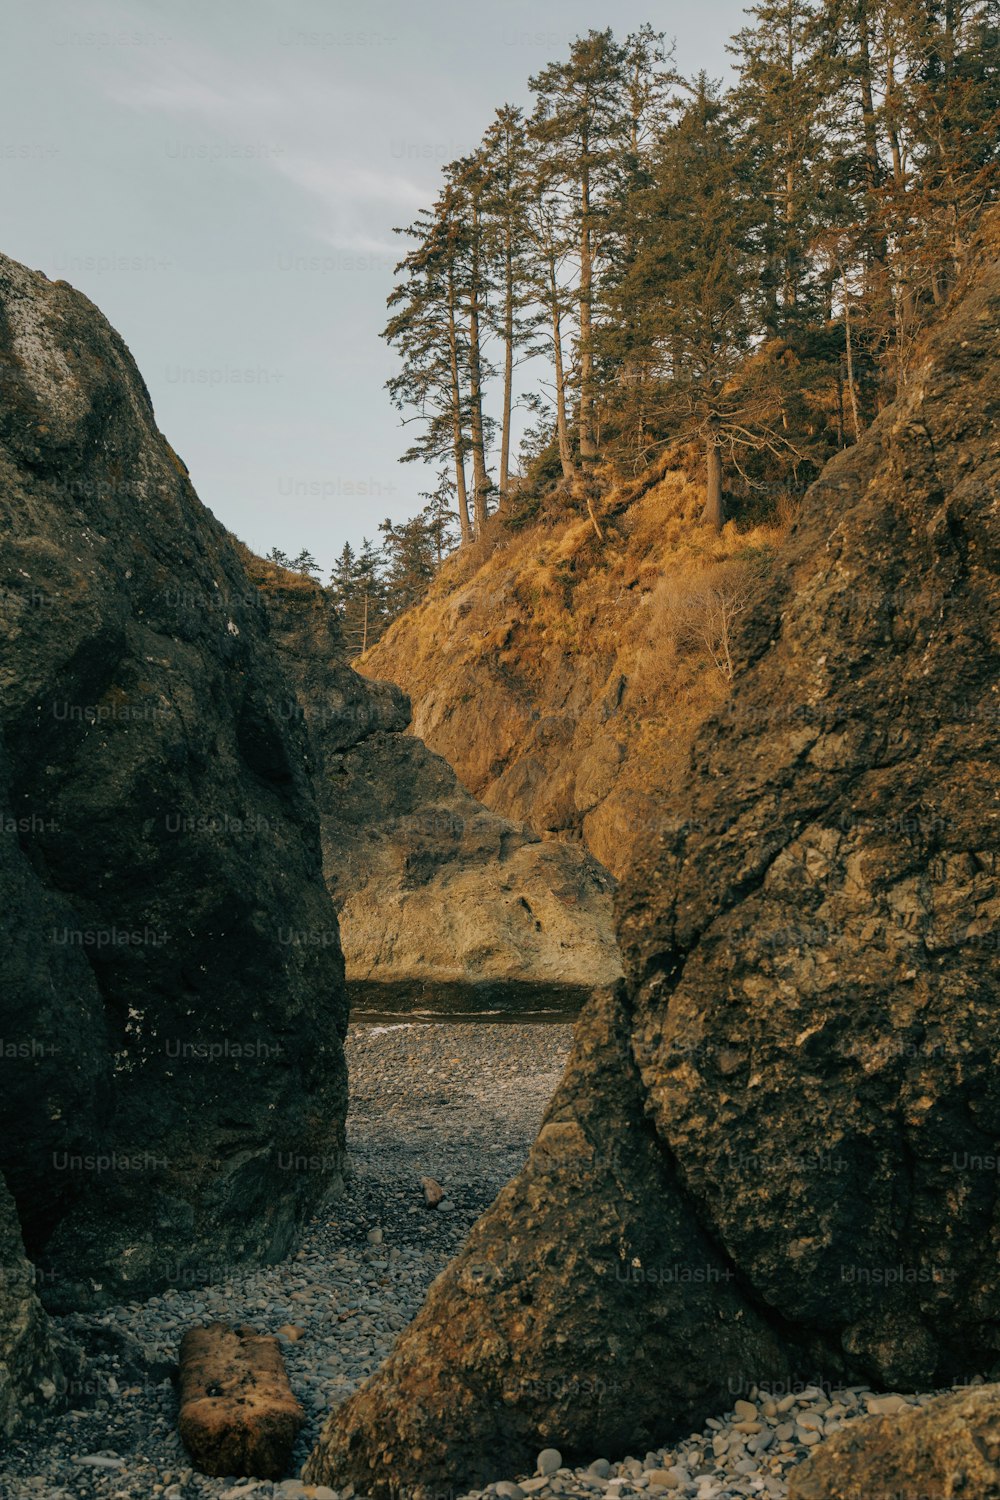 Una playa rocosa con grandes rocas y árboles al fondo